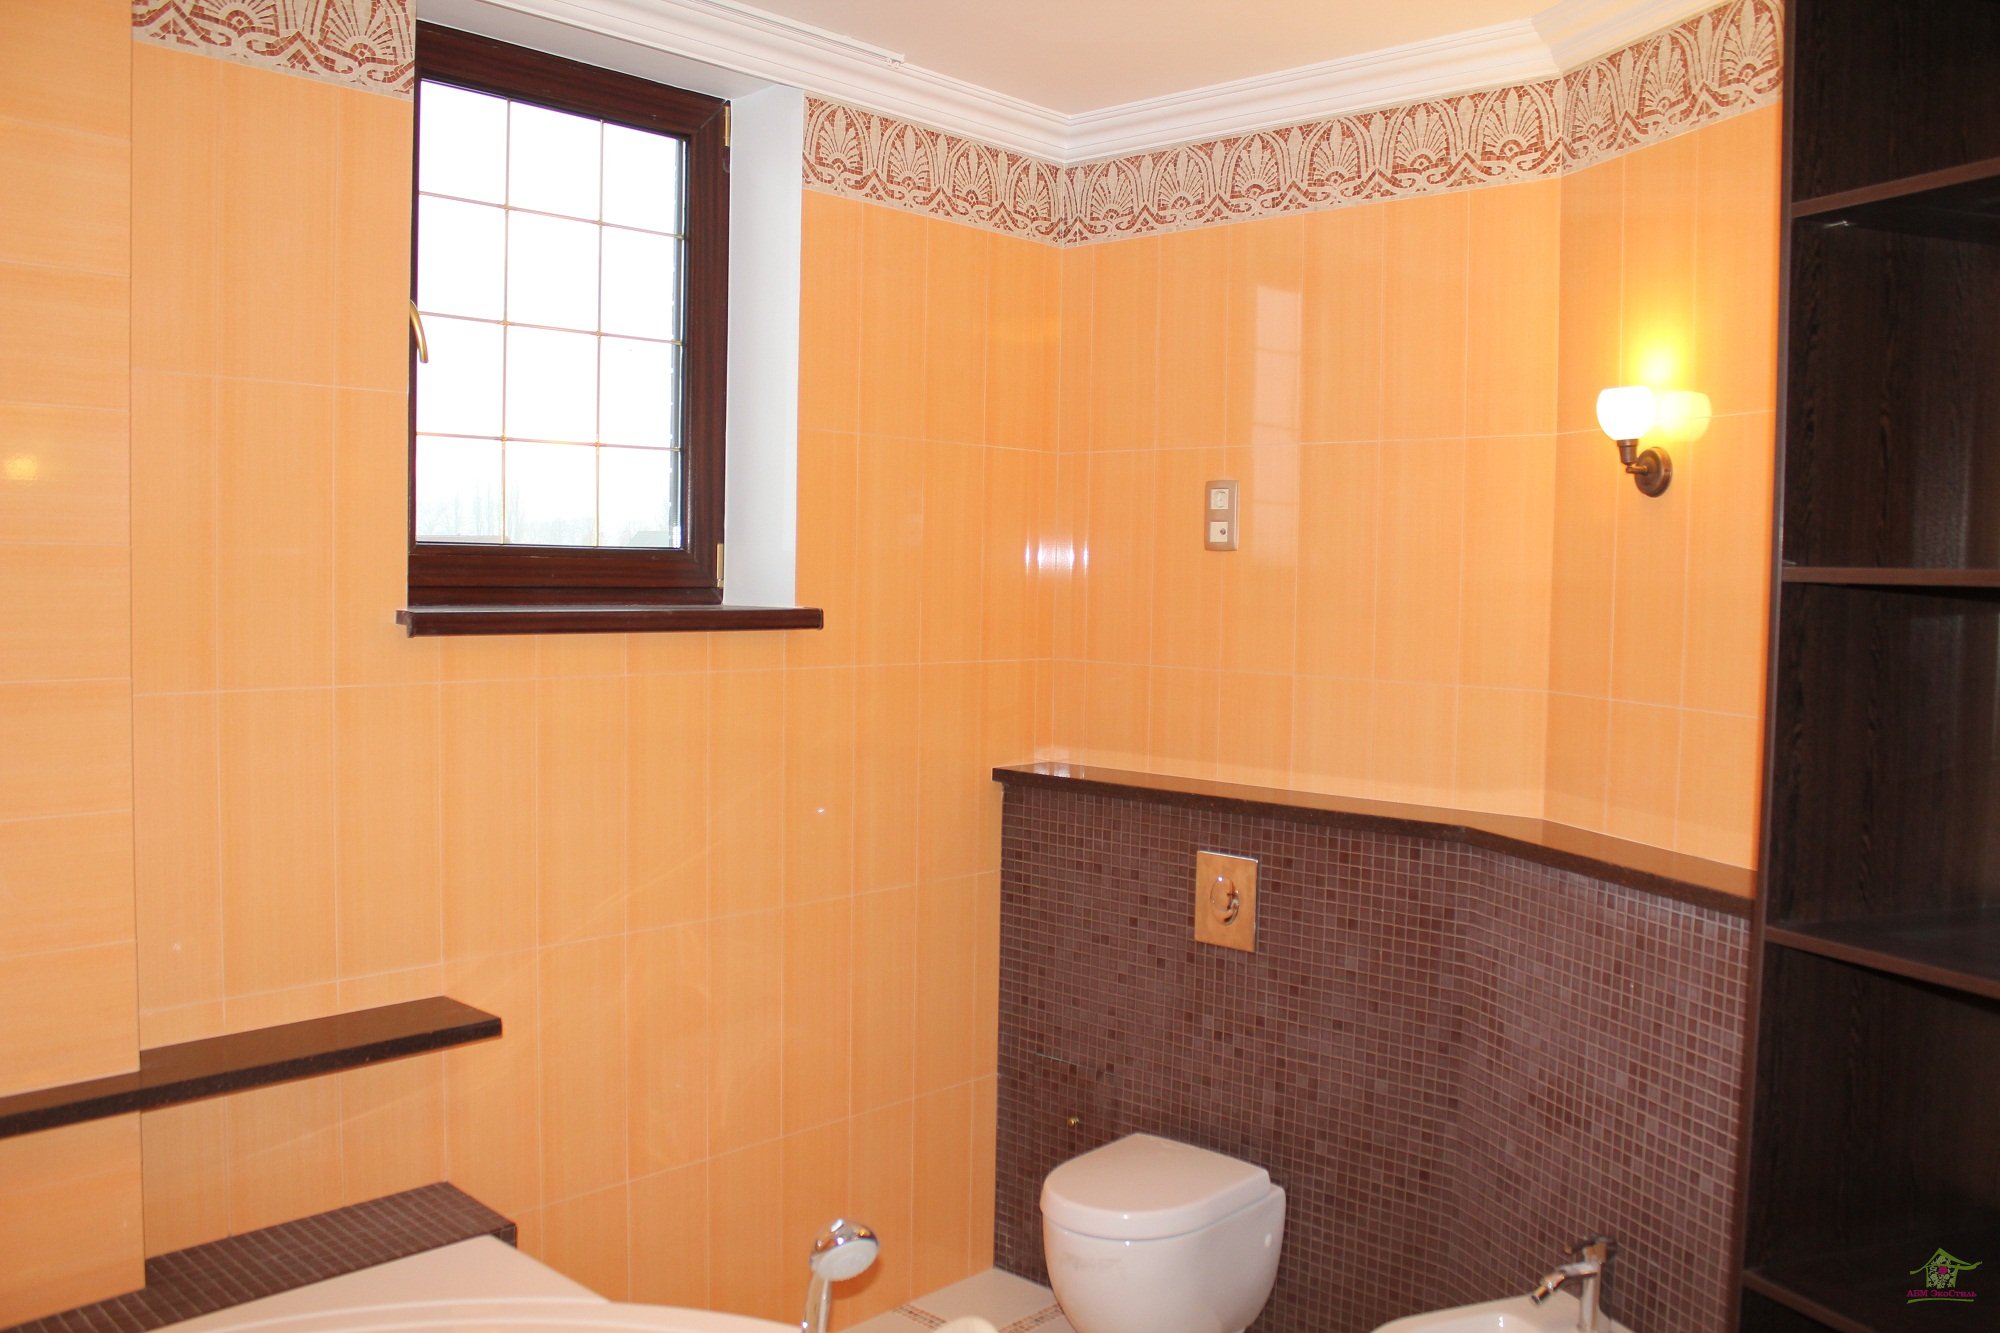 Чем отделать стены в ванной: пвх панели, мдф, мозайка, трафарет, декоративная штукатурка